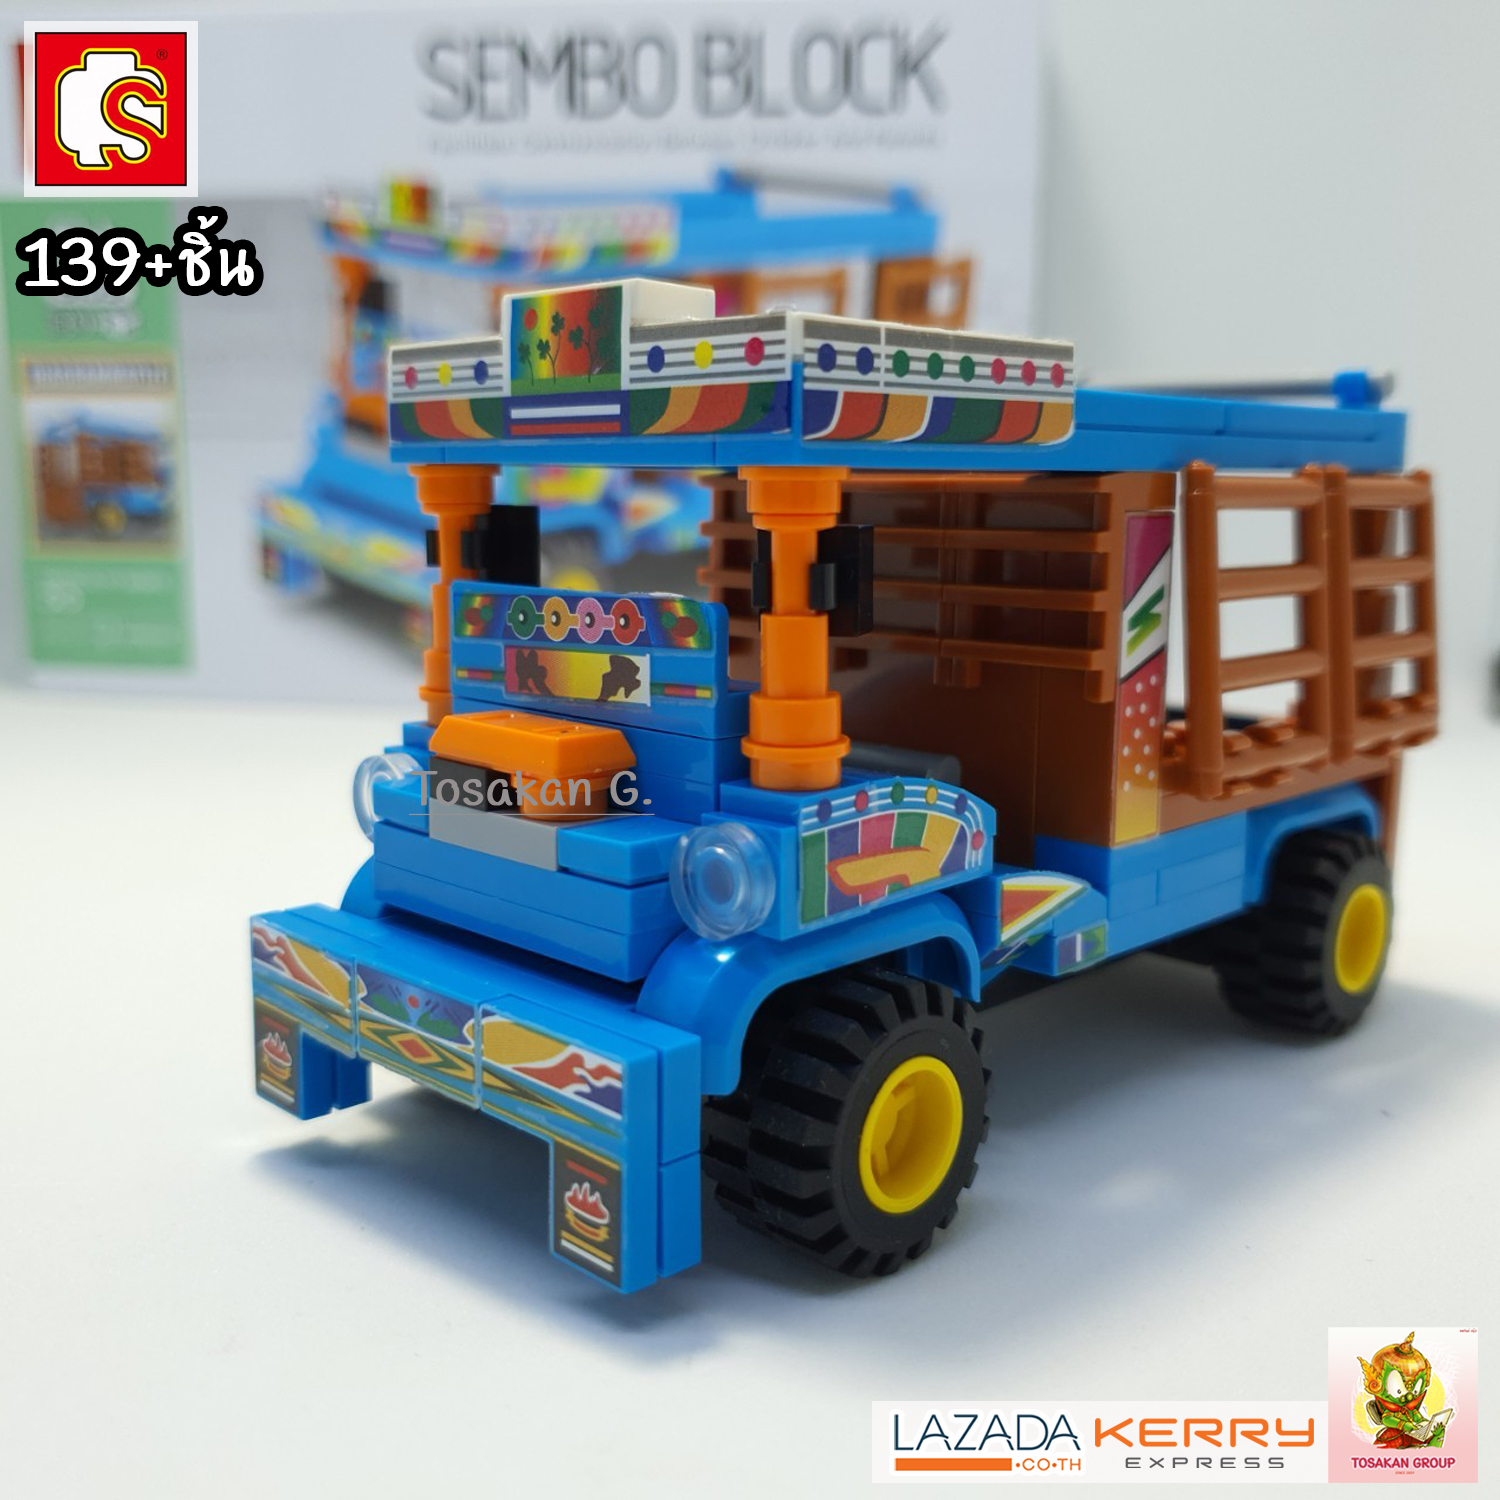 ตัวต่อเลโก้ Sembo Block ยานพาหนะ ไทยสไตล์ ของเล่น ของสะสม ตั้งโชว์ เสริมทักษะ สมาธิ กิจกรรมยามว่างในครอบครัว (สินค้าพร้อมส่ง) สี รถอีแต๋น สี รถอีแต๋น